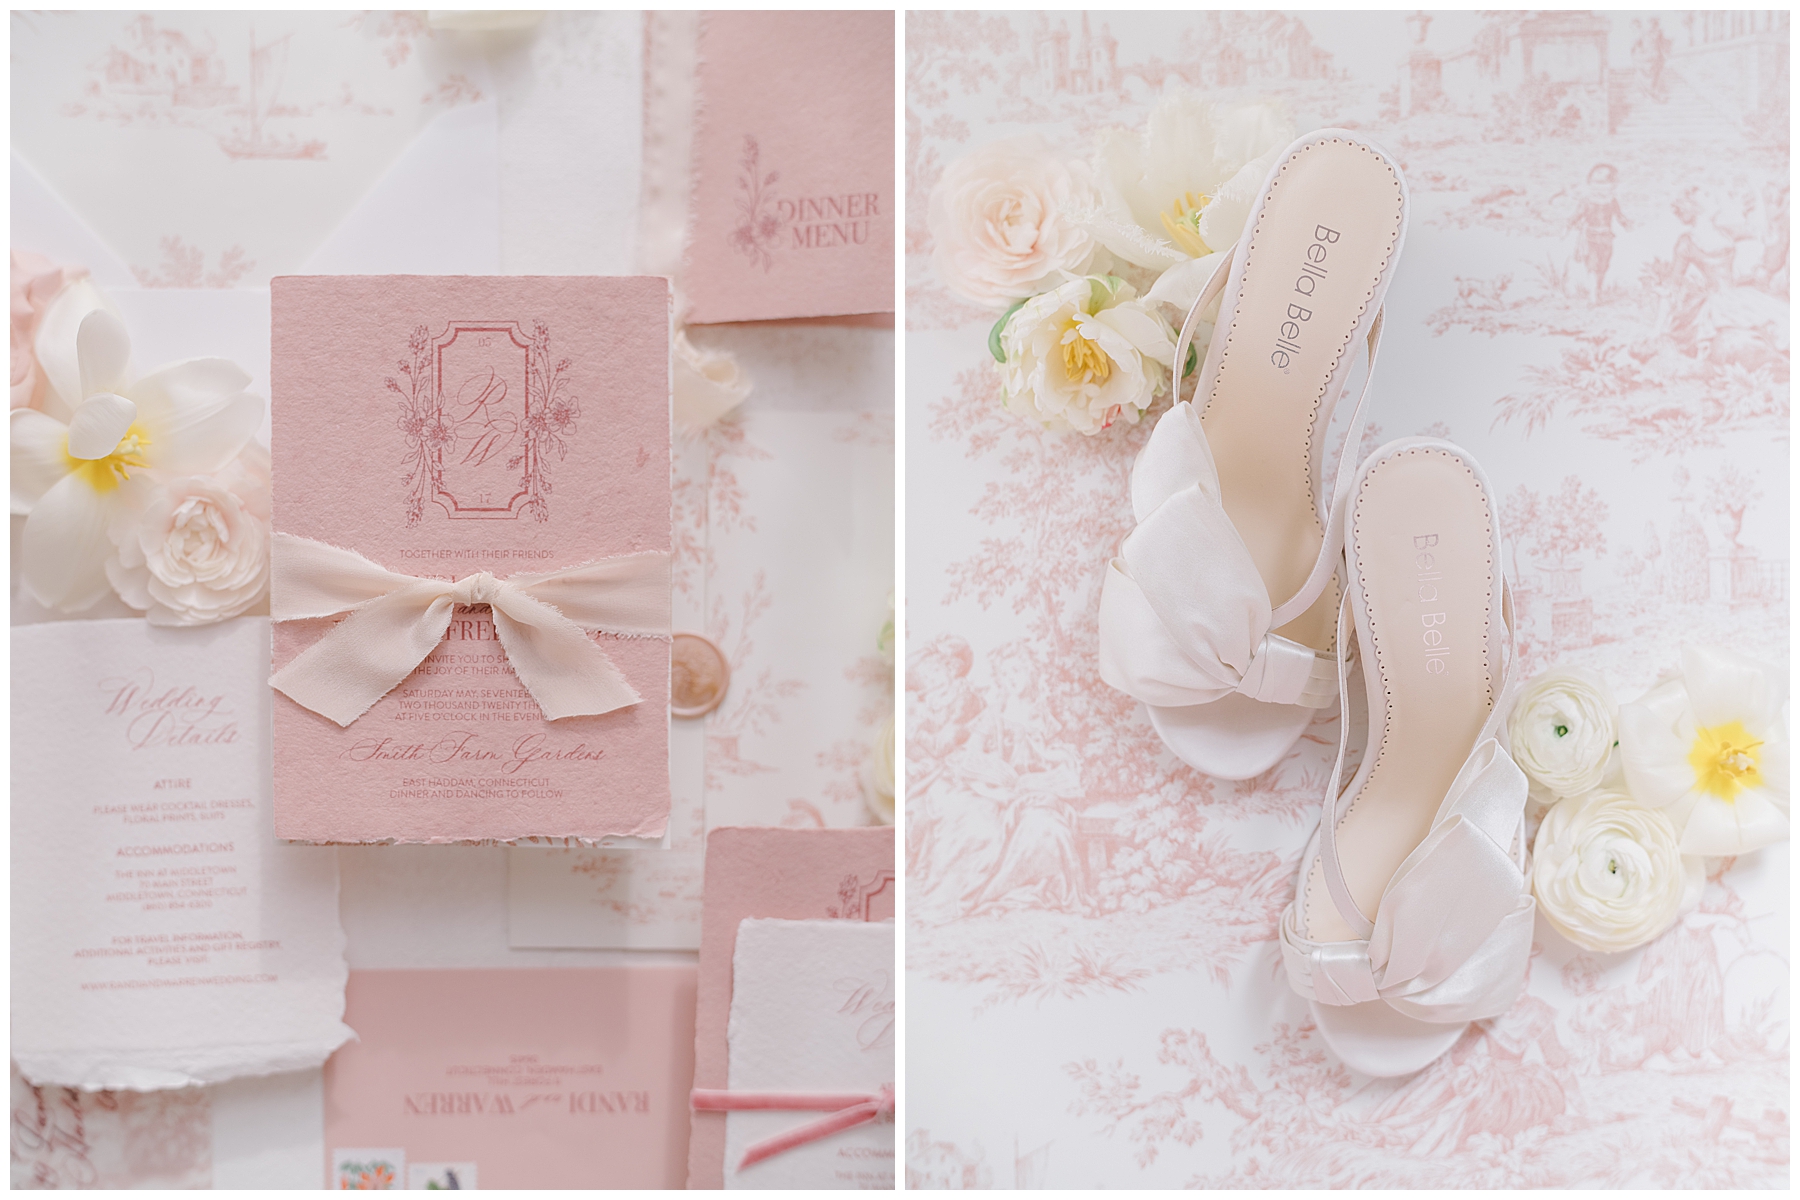 romantic wedding details in blush tones 